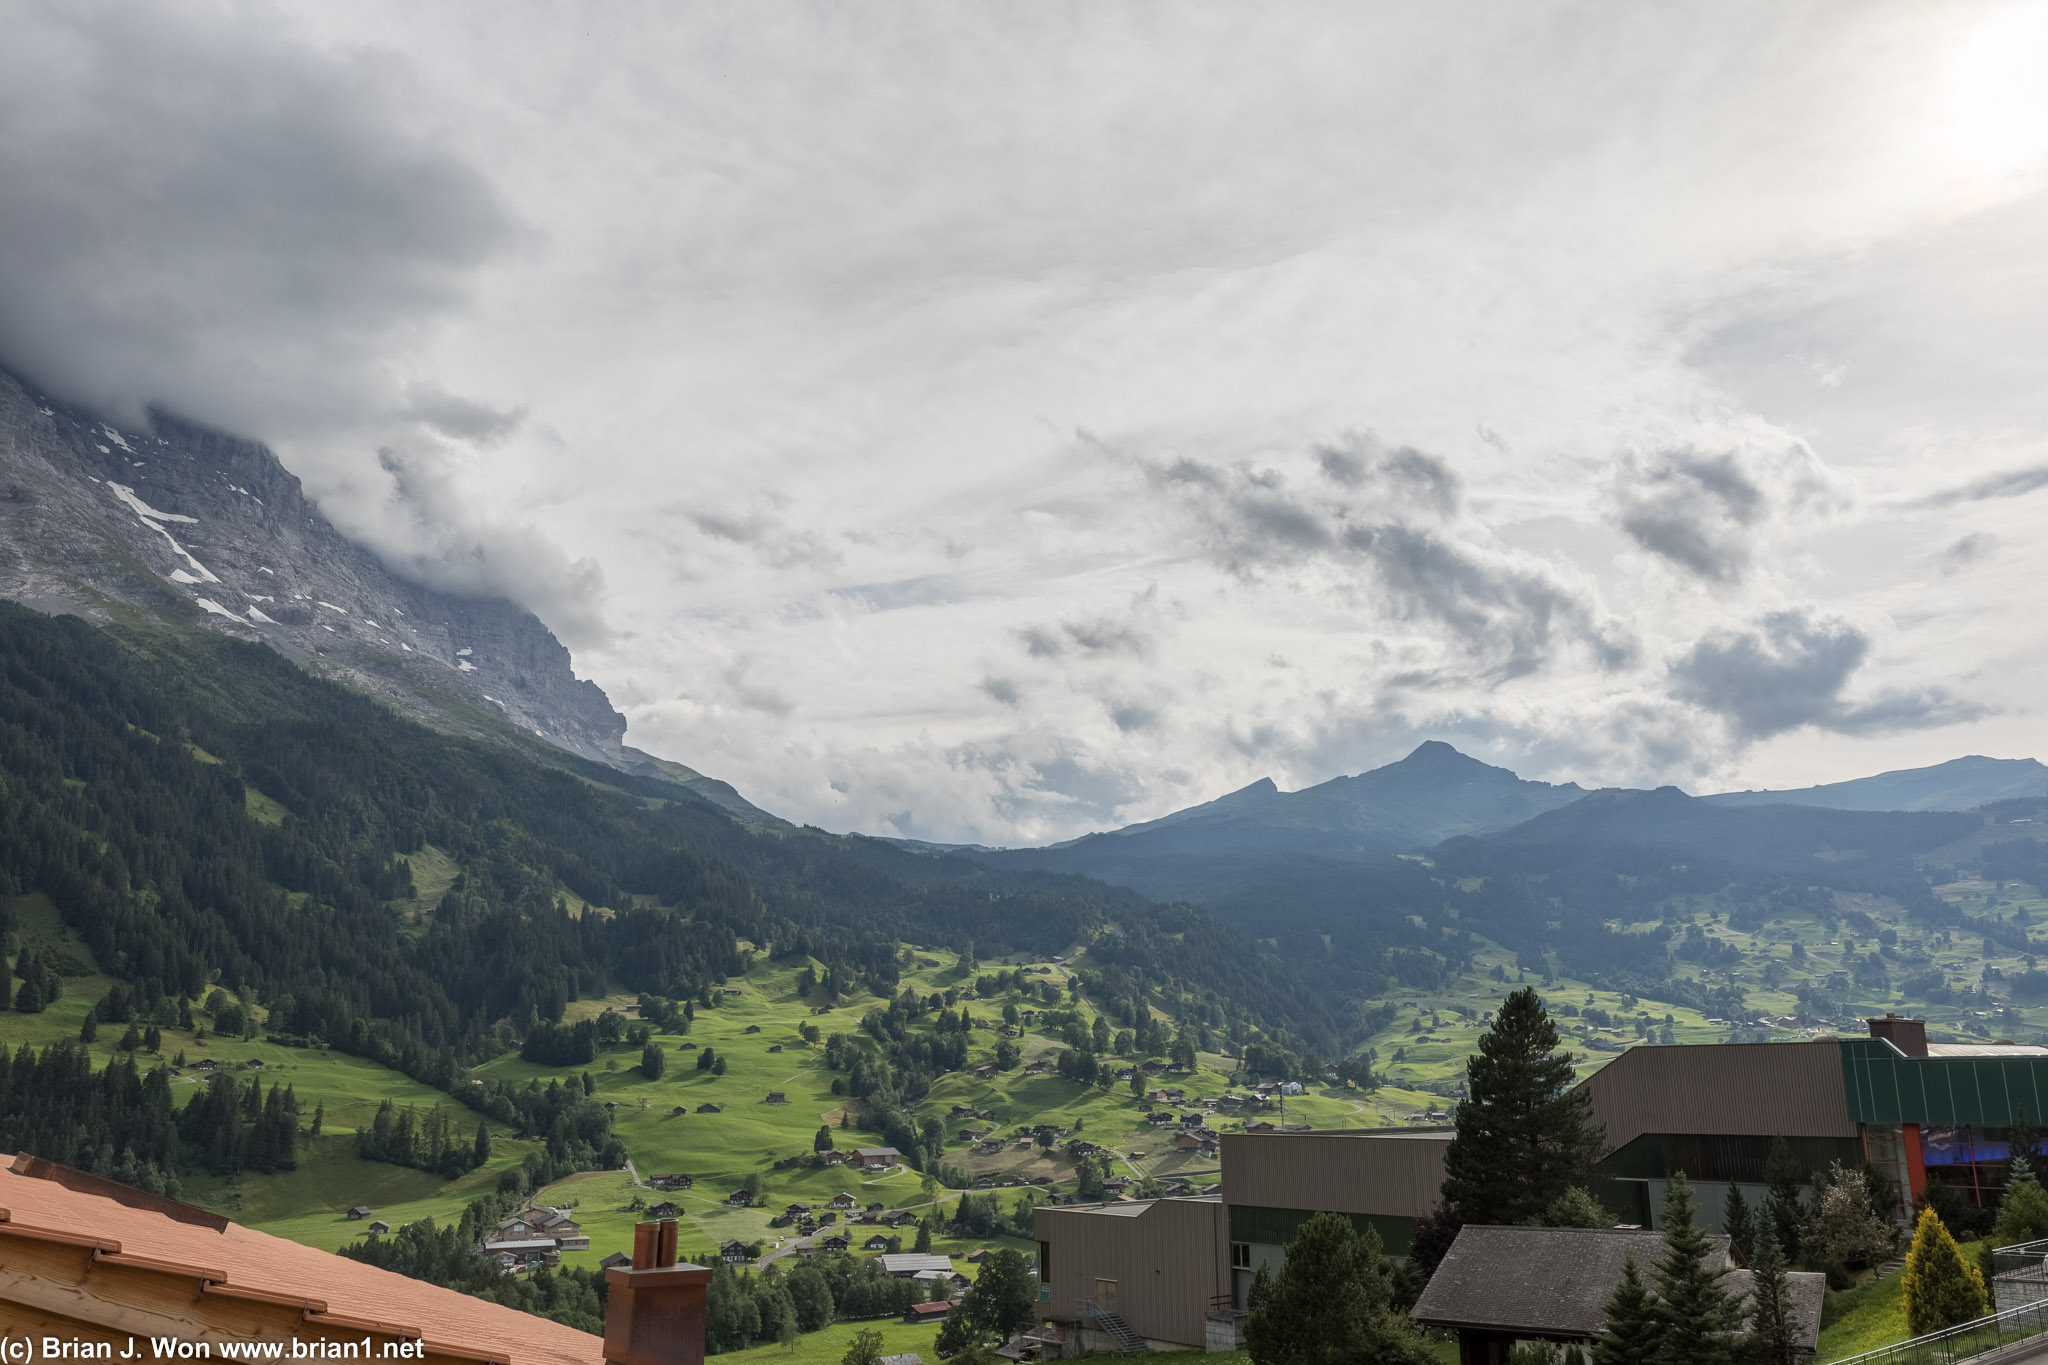 Switzerland has some gorgeous mountain views.